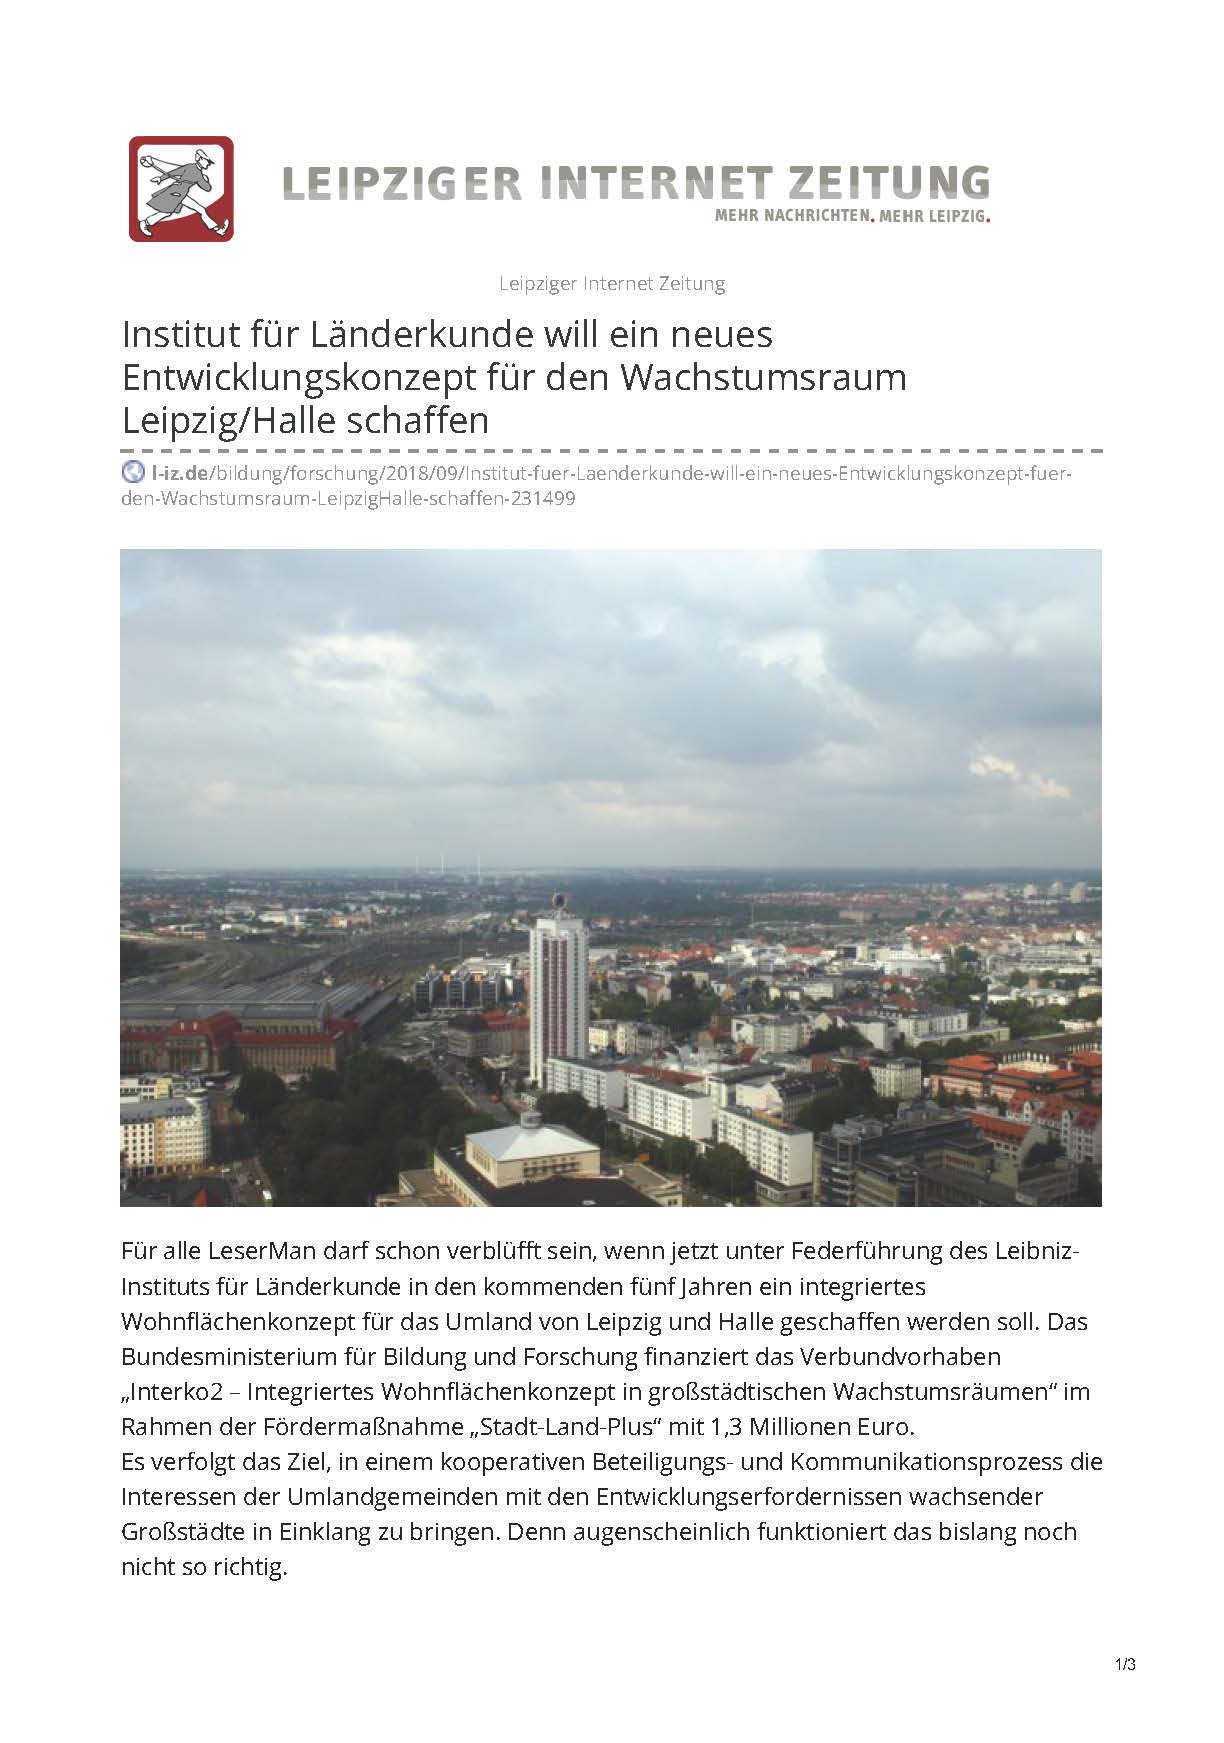 Leipziger Internet Zeitung 2018 - InterKo2